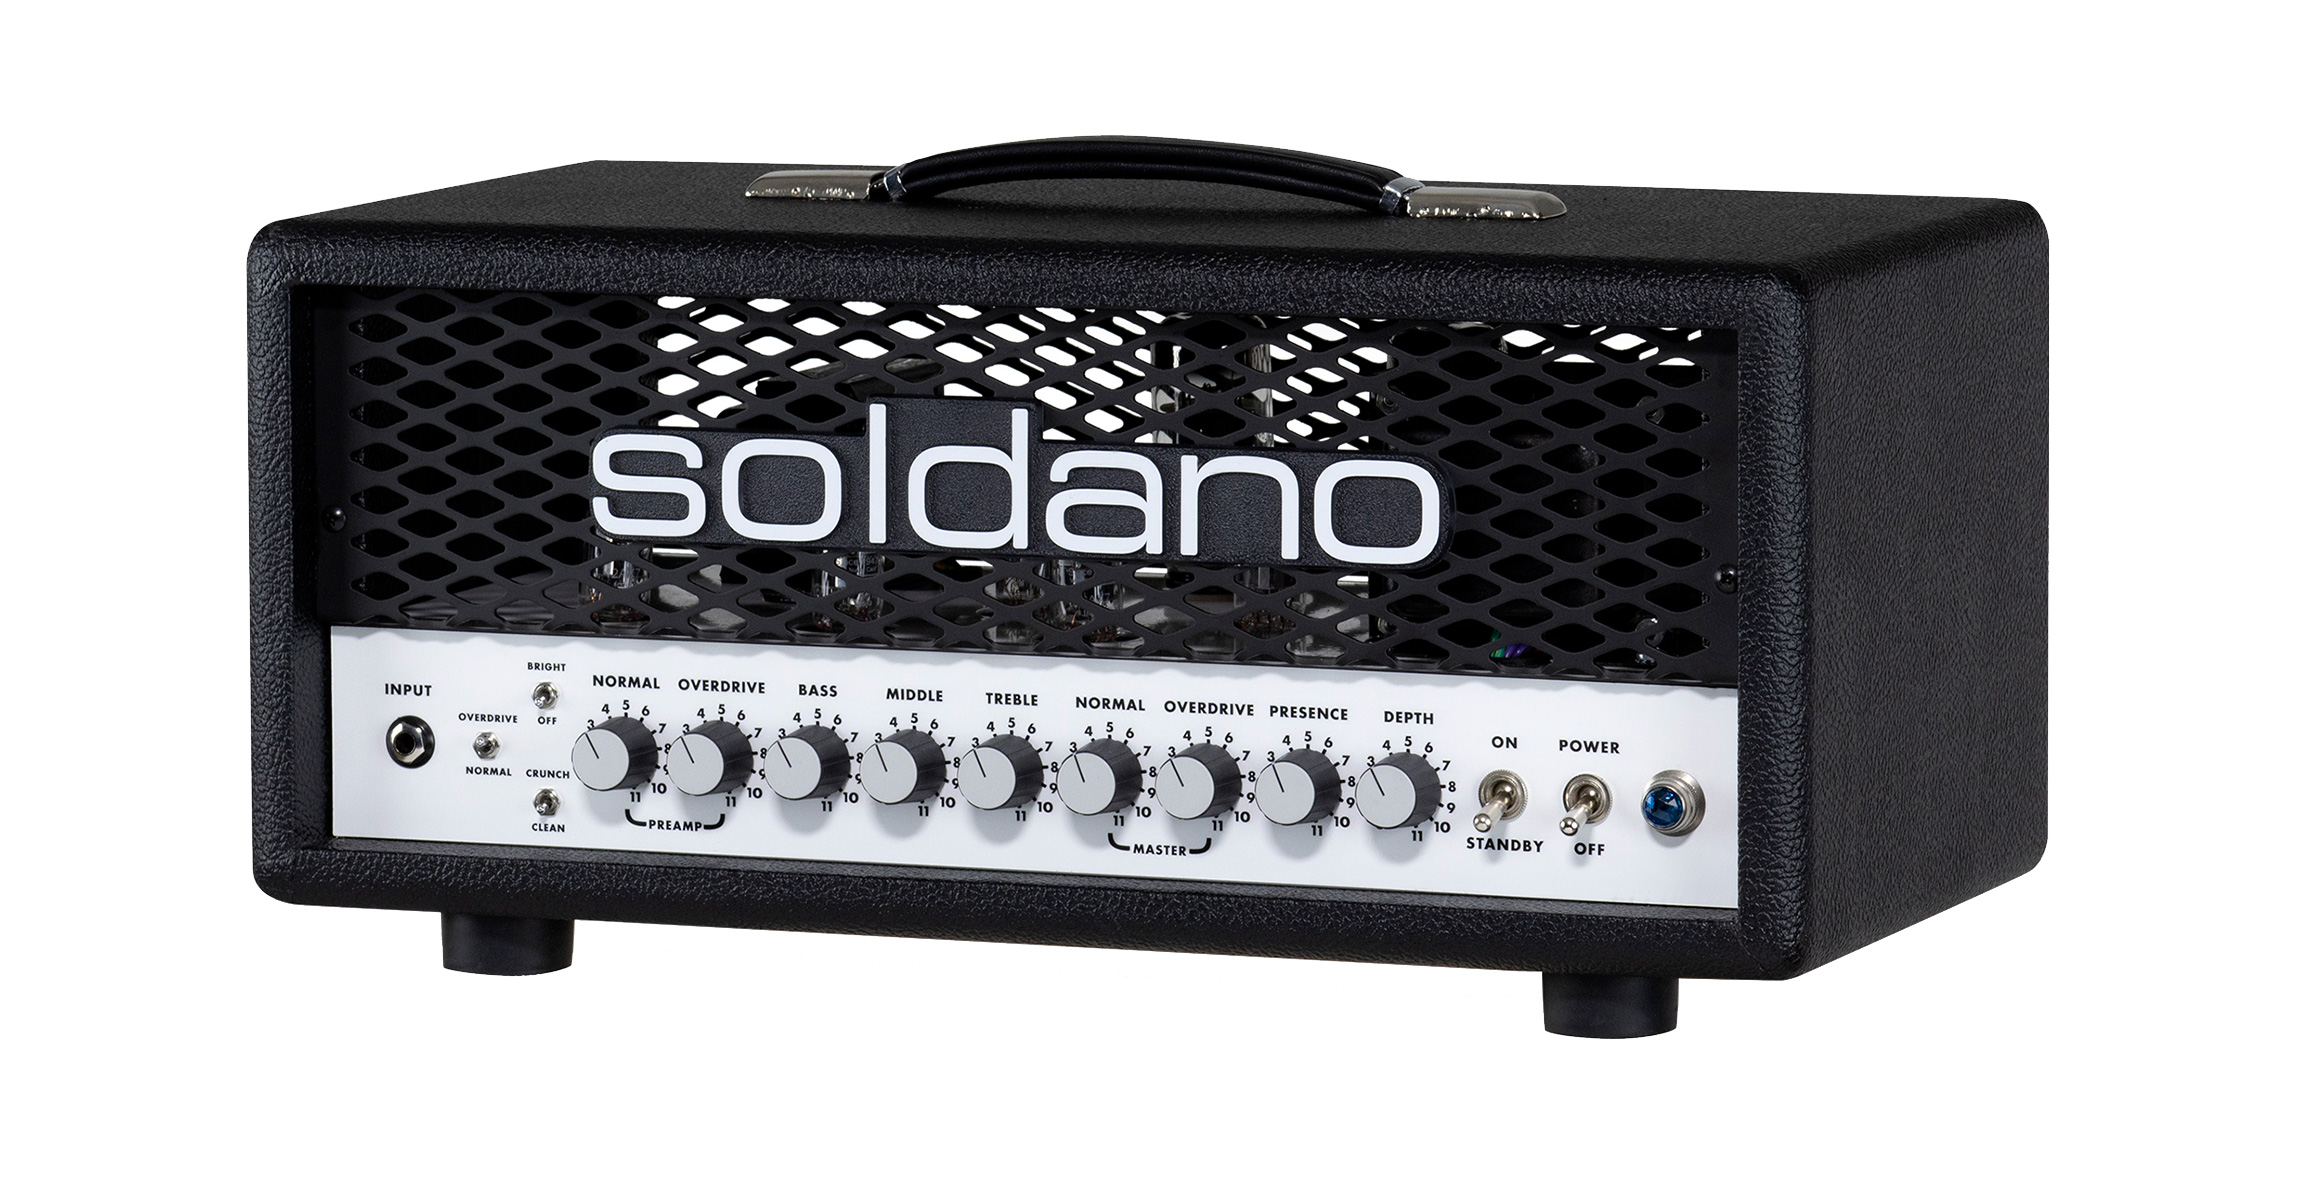 Soldano SLO-30 Classic